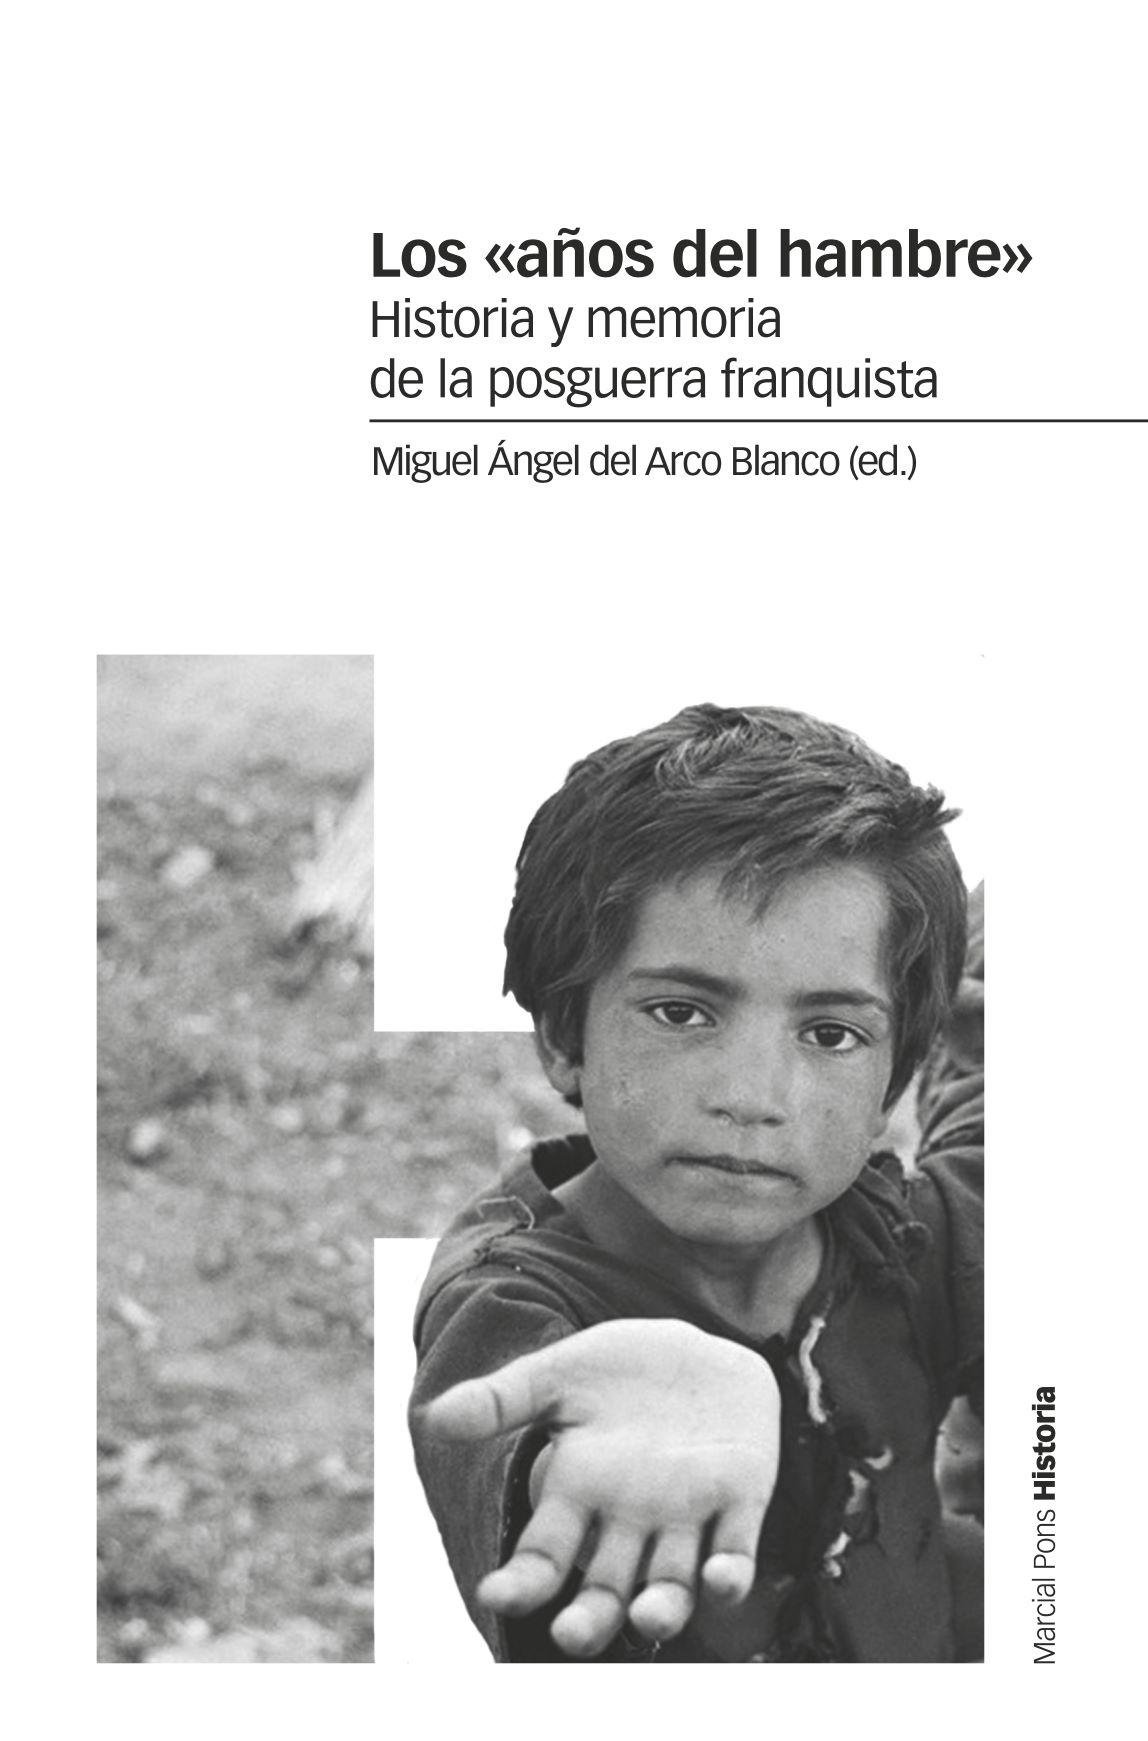 Los  Años del Hambre "Historia y Memoria de la Posguerra Franquista"